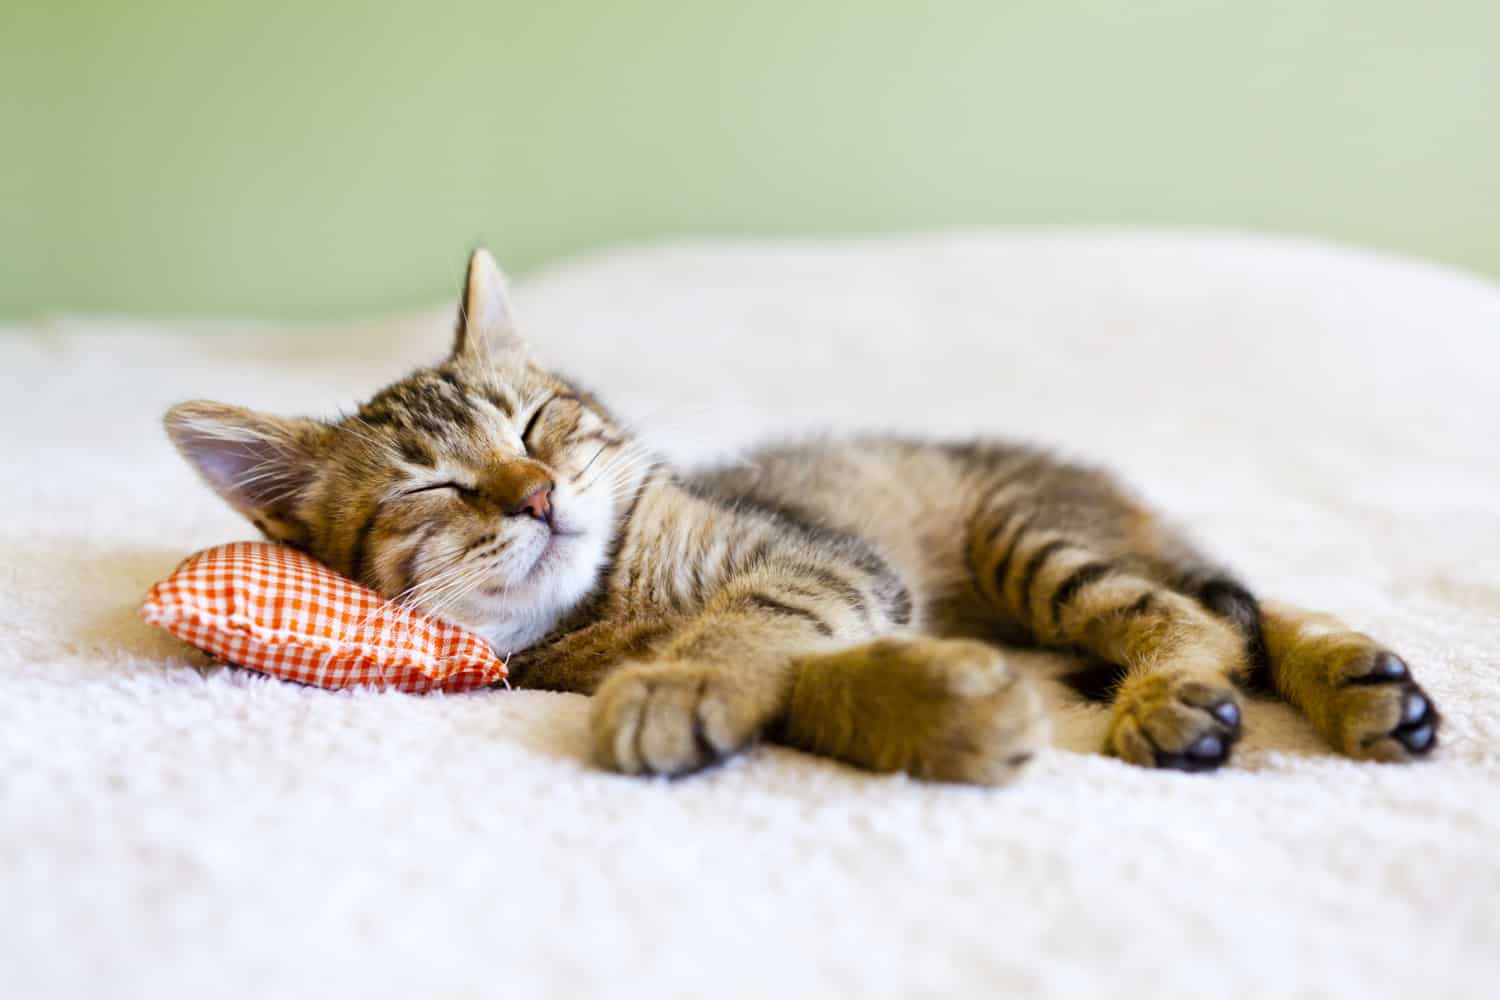 A little kitten is sleeping on a pillow